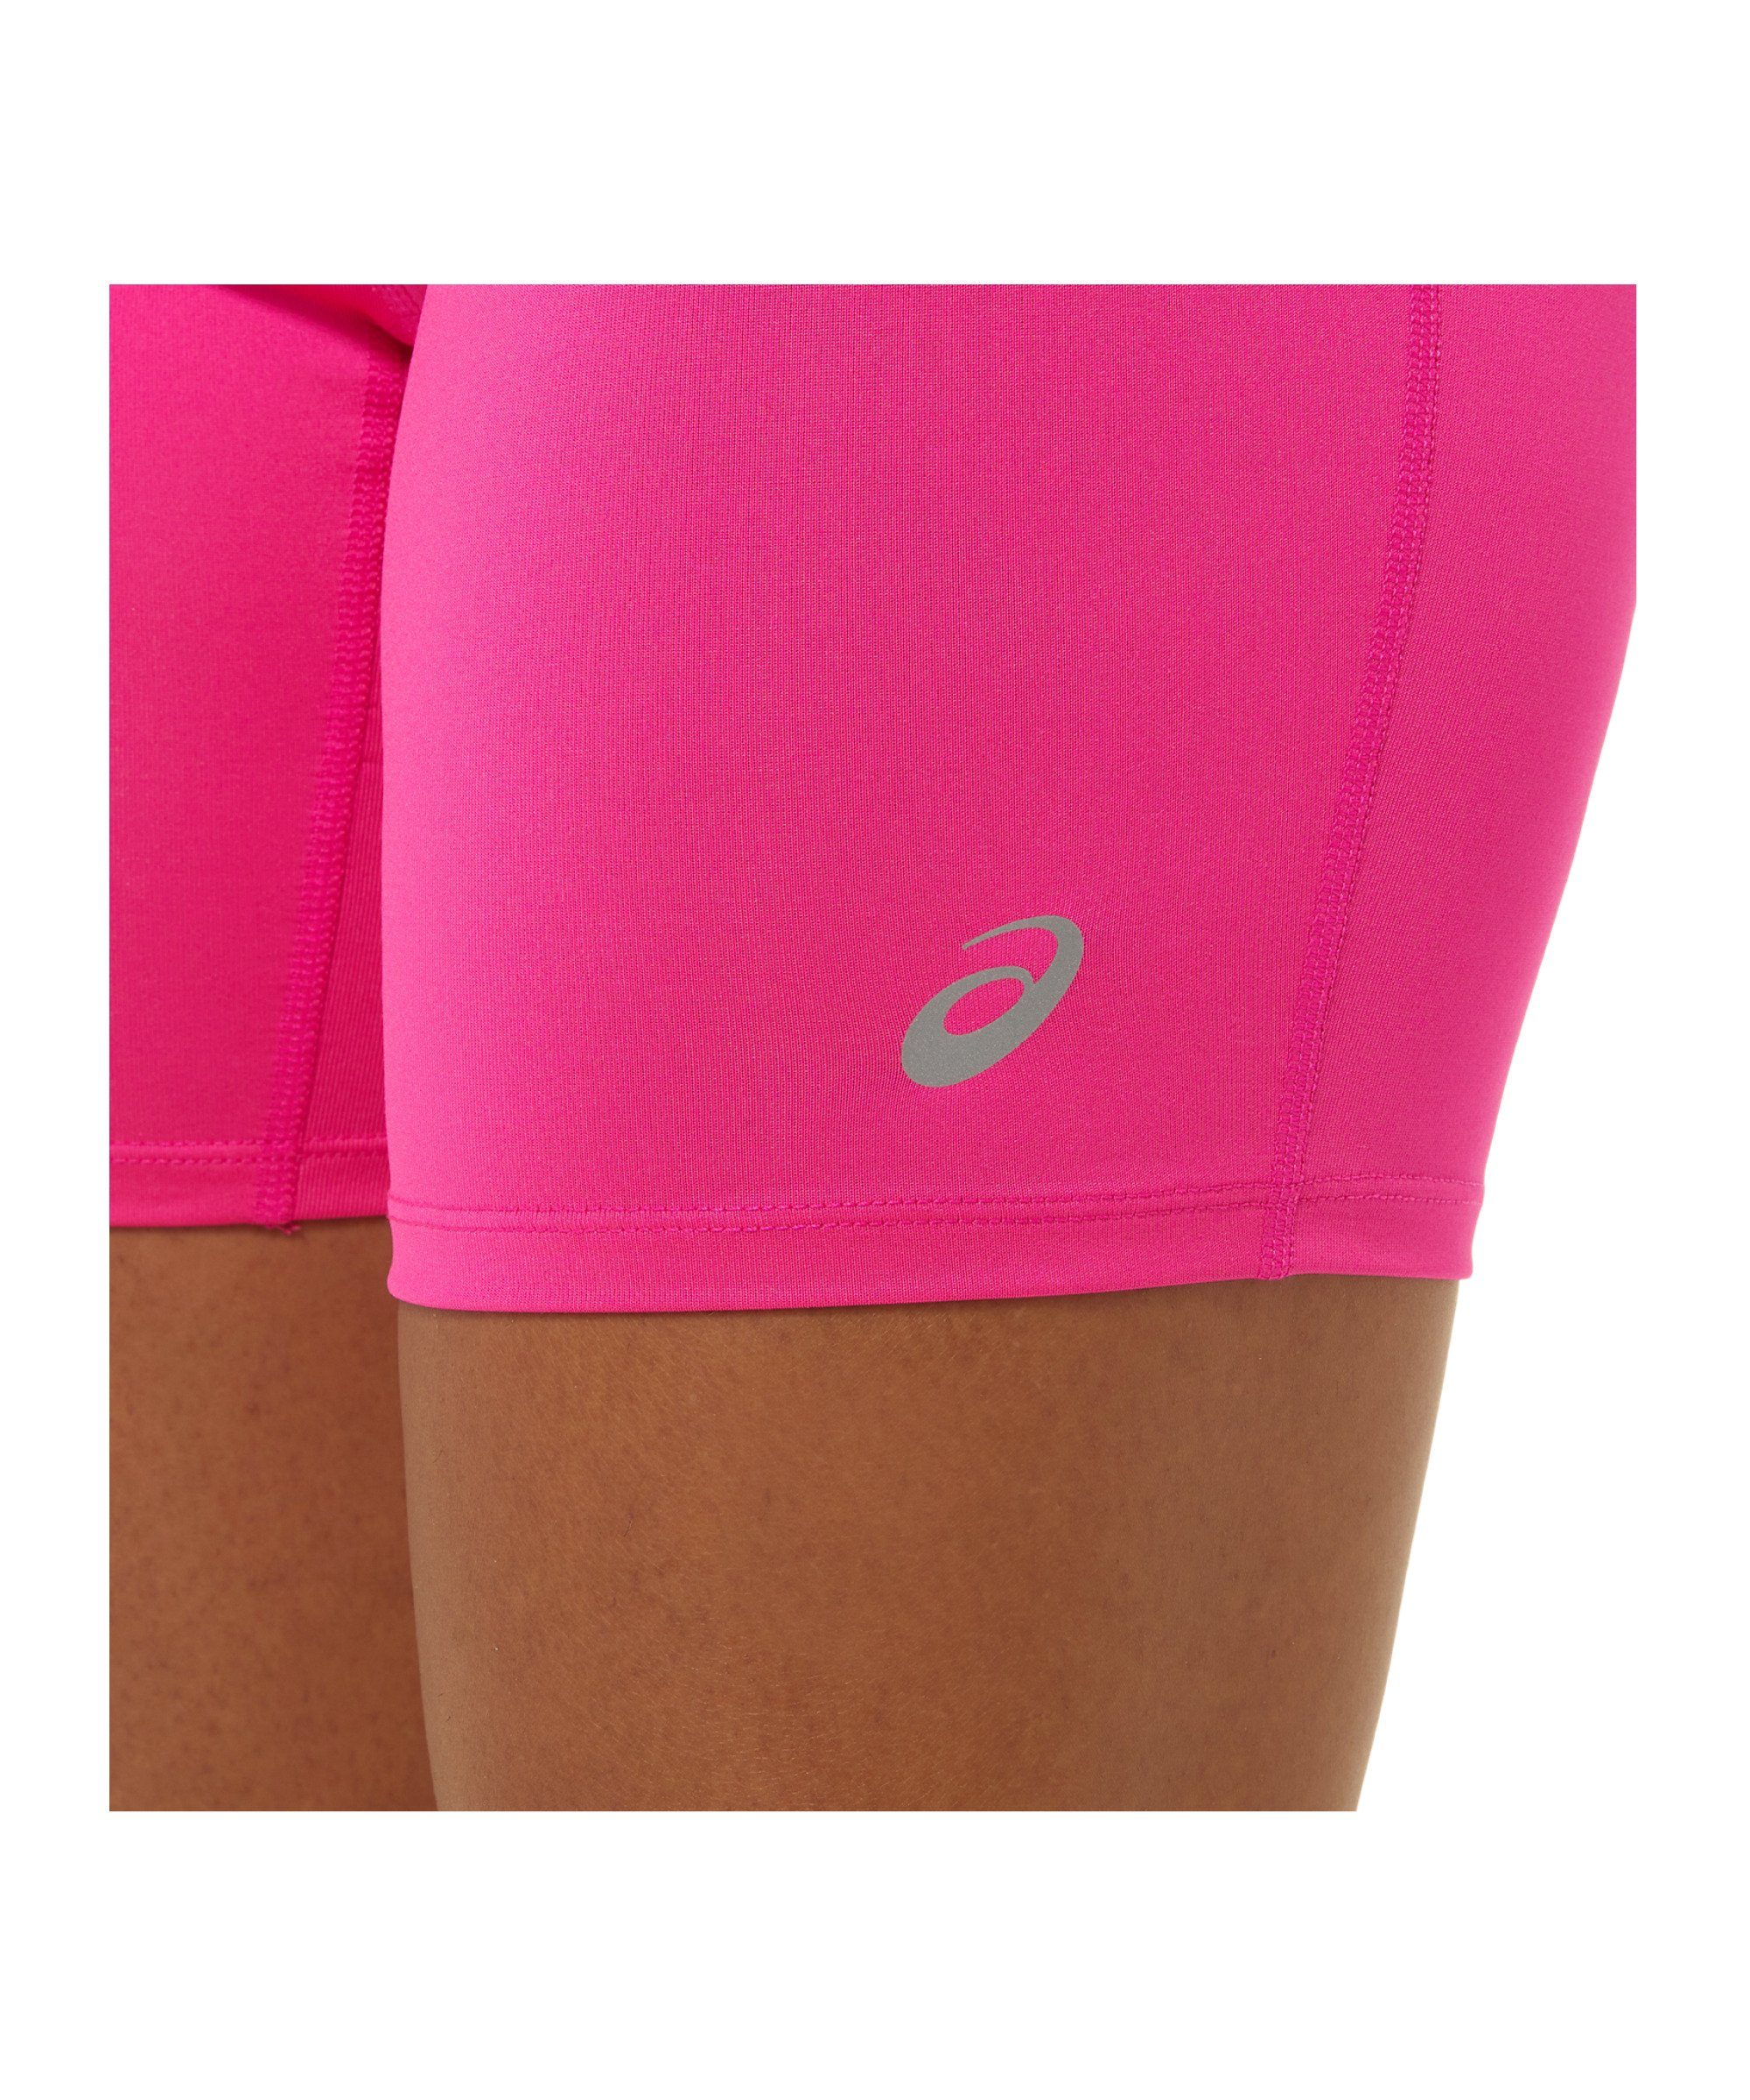 Asics Sprinter Laufshorts Short Running Damen Core pink